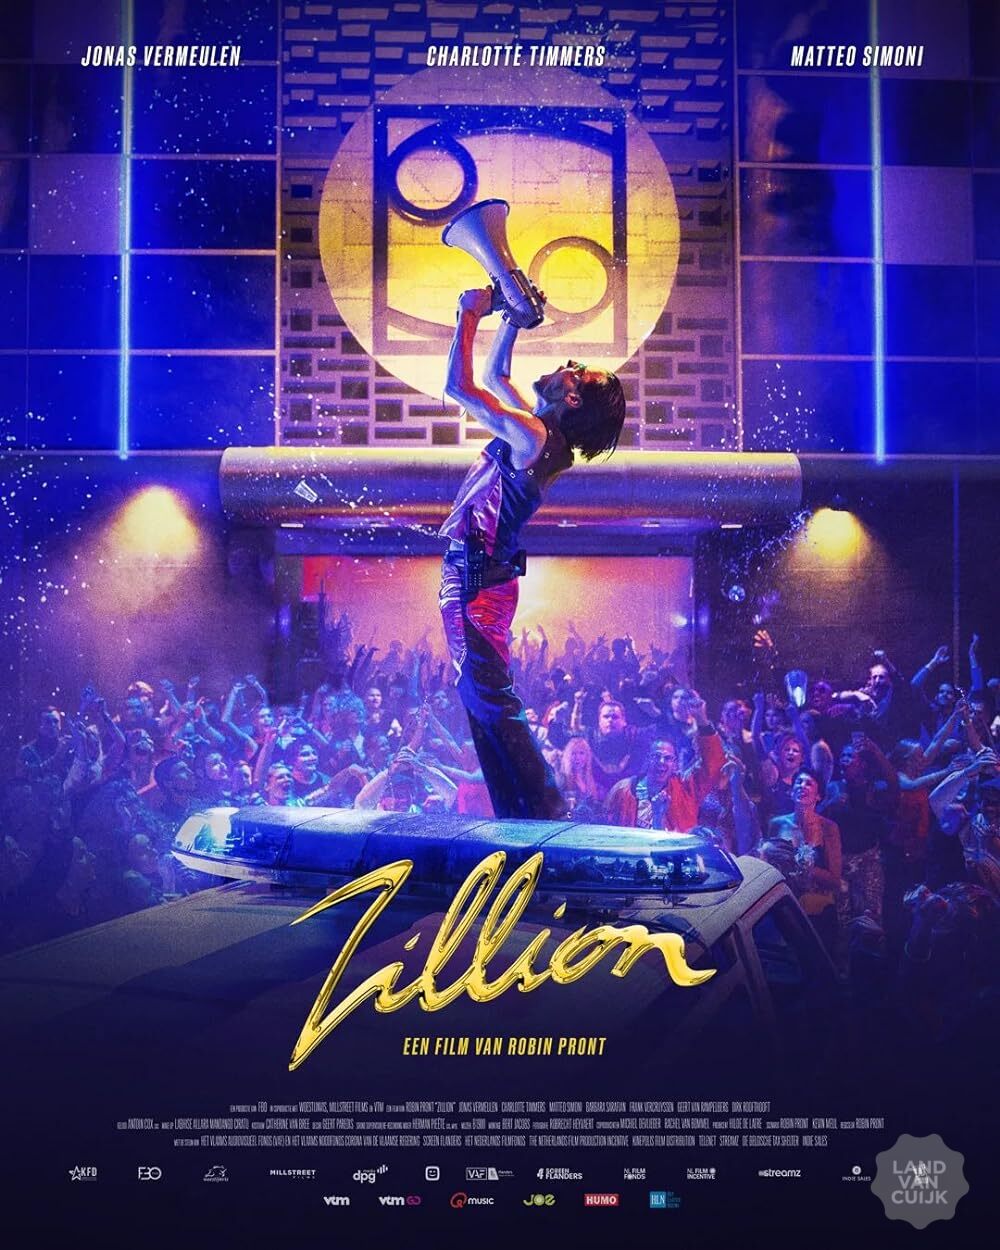 Film ‘Zillion’ met en zonder diner te boeken in Mill